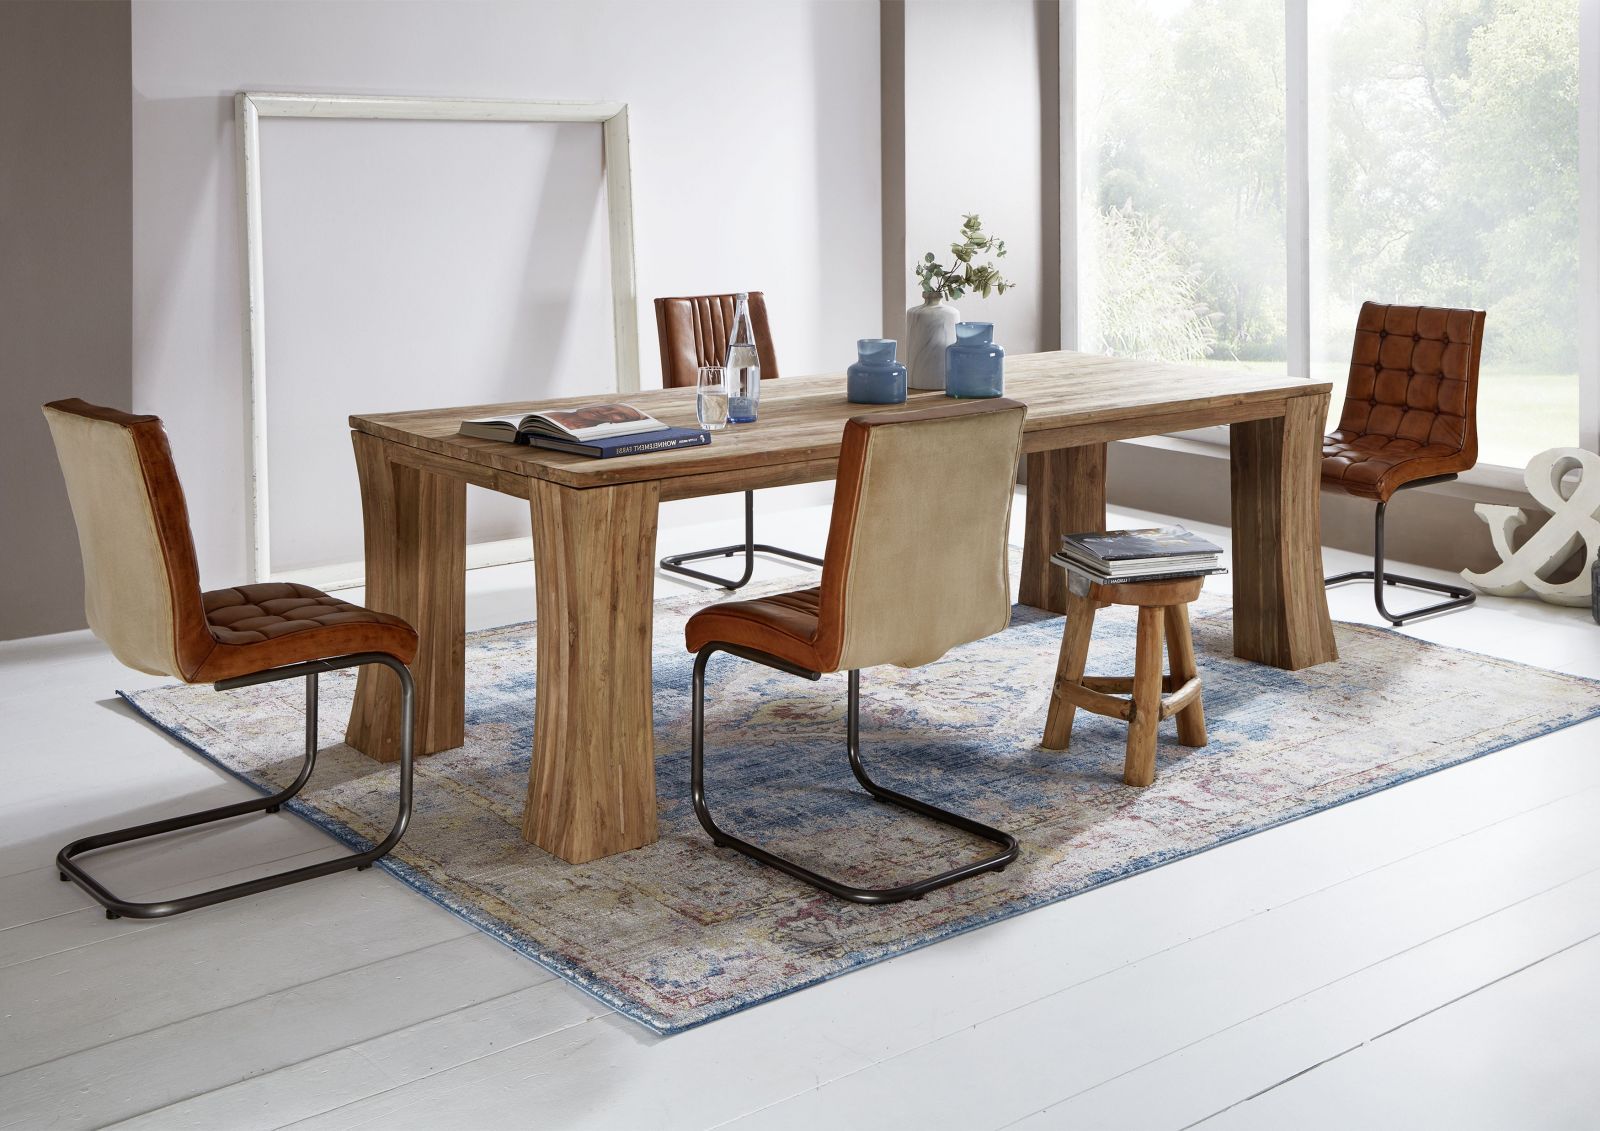 tavolino da salotto in legno di Teak 120x60x45 naturale grezzo BUTON #107